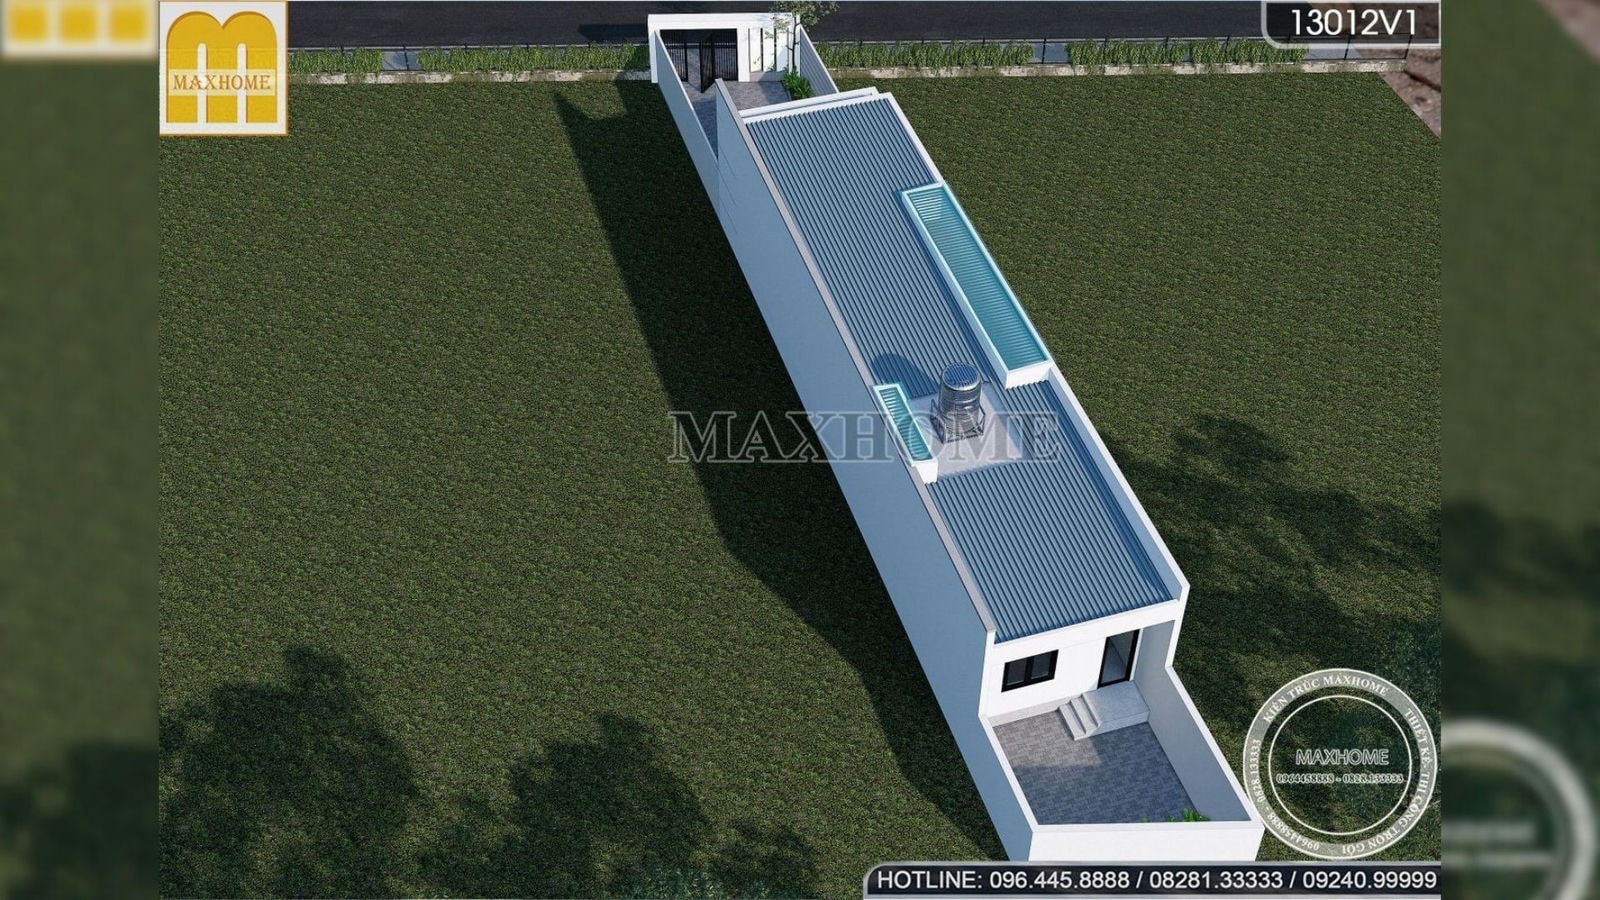 Thiết kế nhà 1 tầng hiện đại 5 x 22m mái tôn đẹp chi phí hợp lý | MH01625